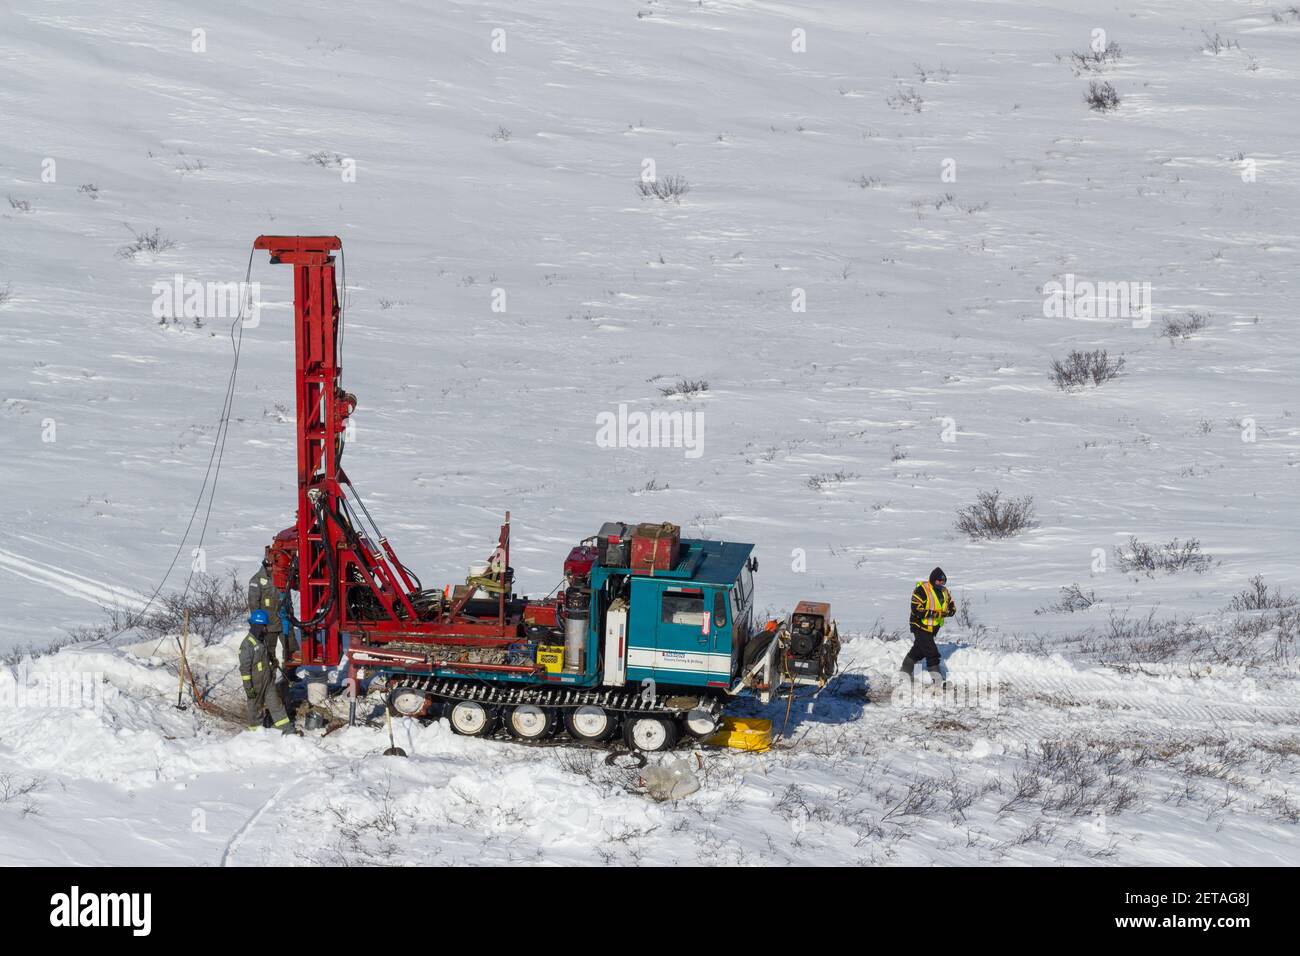 Geotech-Bohrgerät testet Kiesquellen für den Inuvik-Tuktoyaktuk Highway während des Winterbaus, Nordwest-Territorien, Kanadas Arktis. Stockfoto